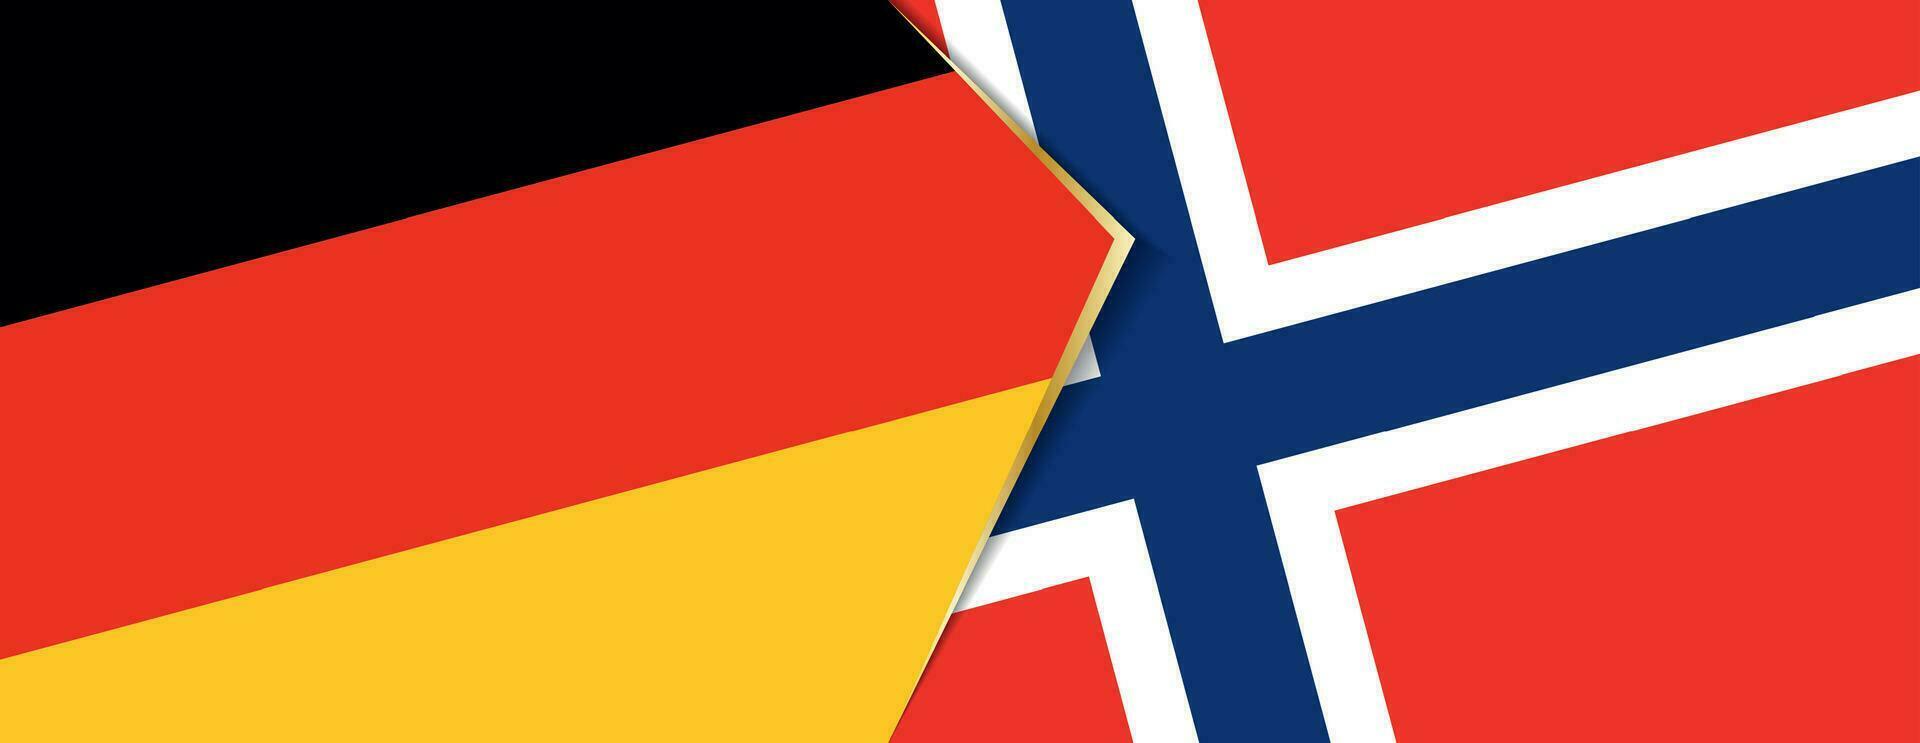 Alemania y Noruega banderas, dos vector banderas